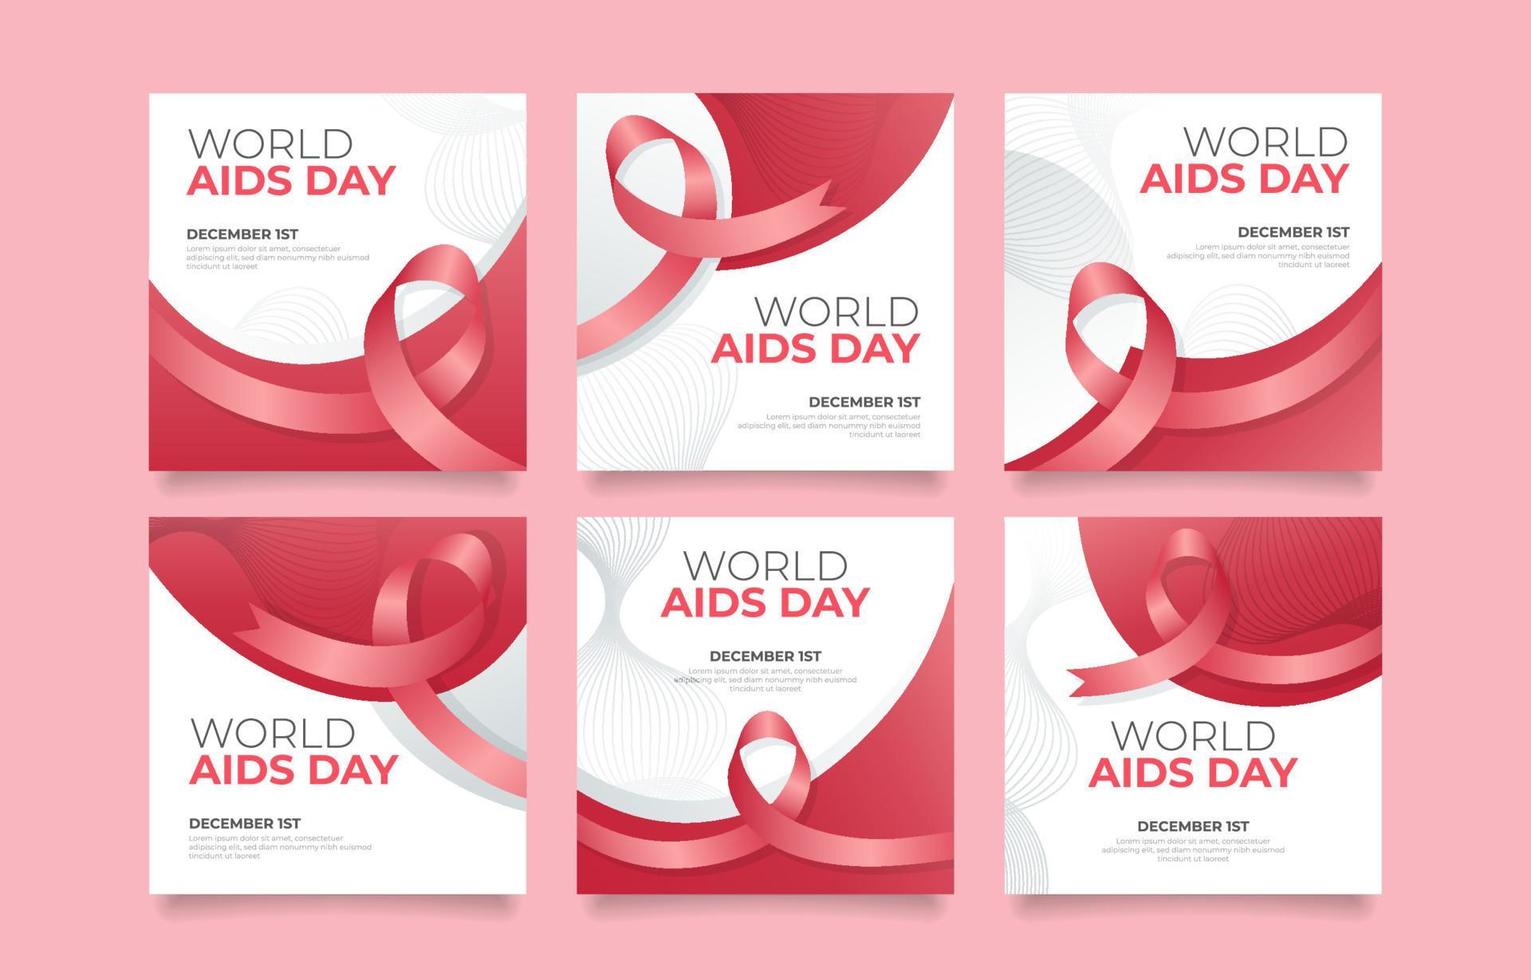 post sui social media della giornata mondiale dell'AIDS vettore